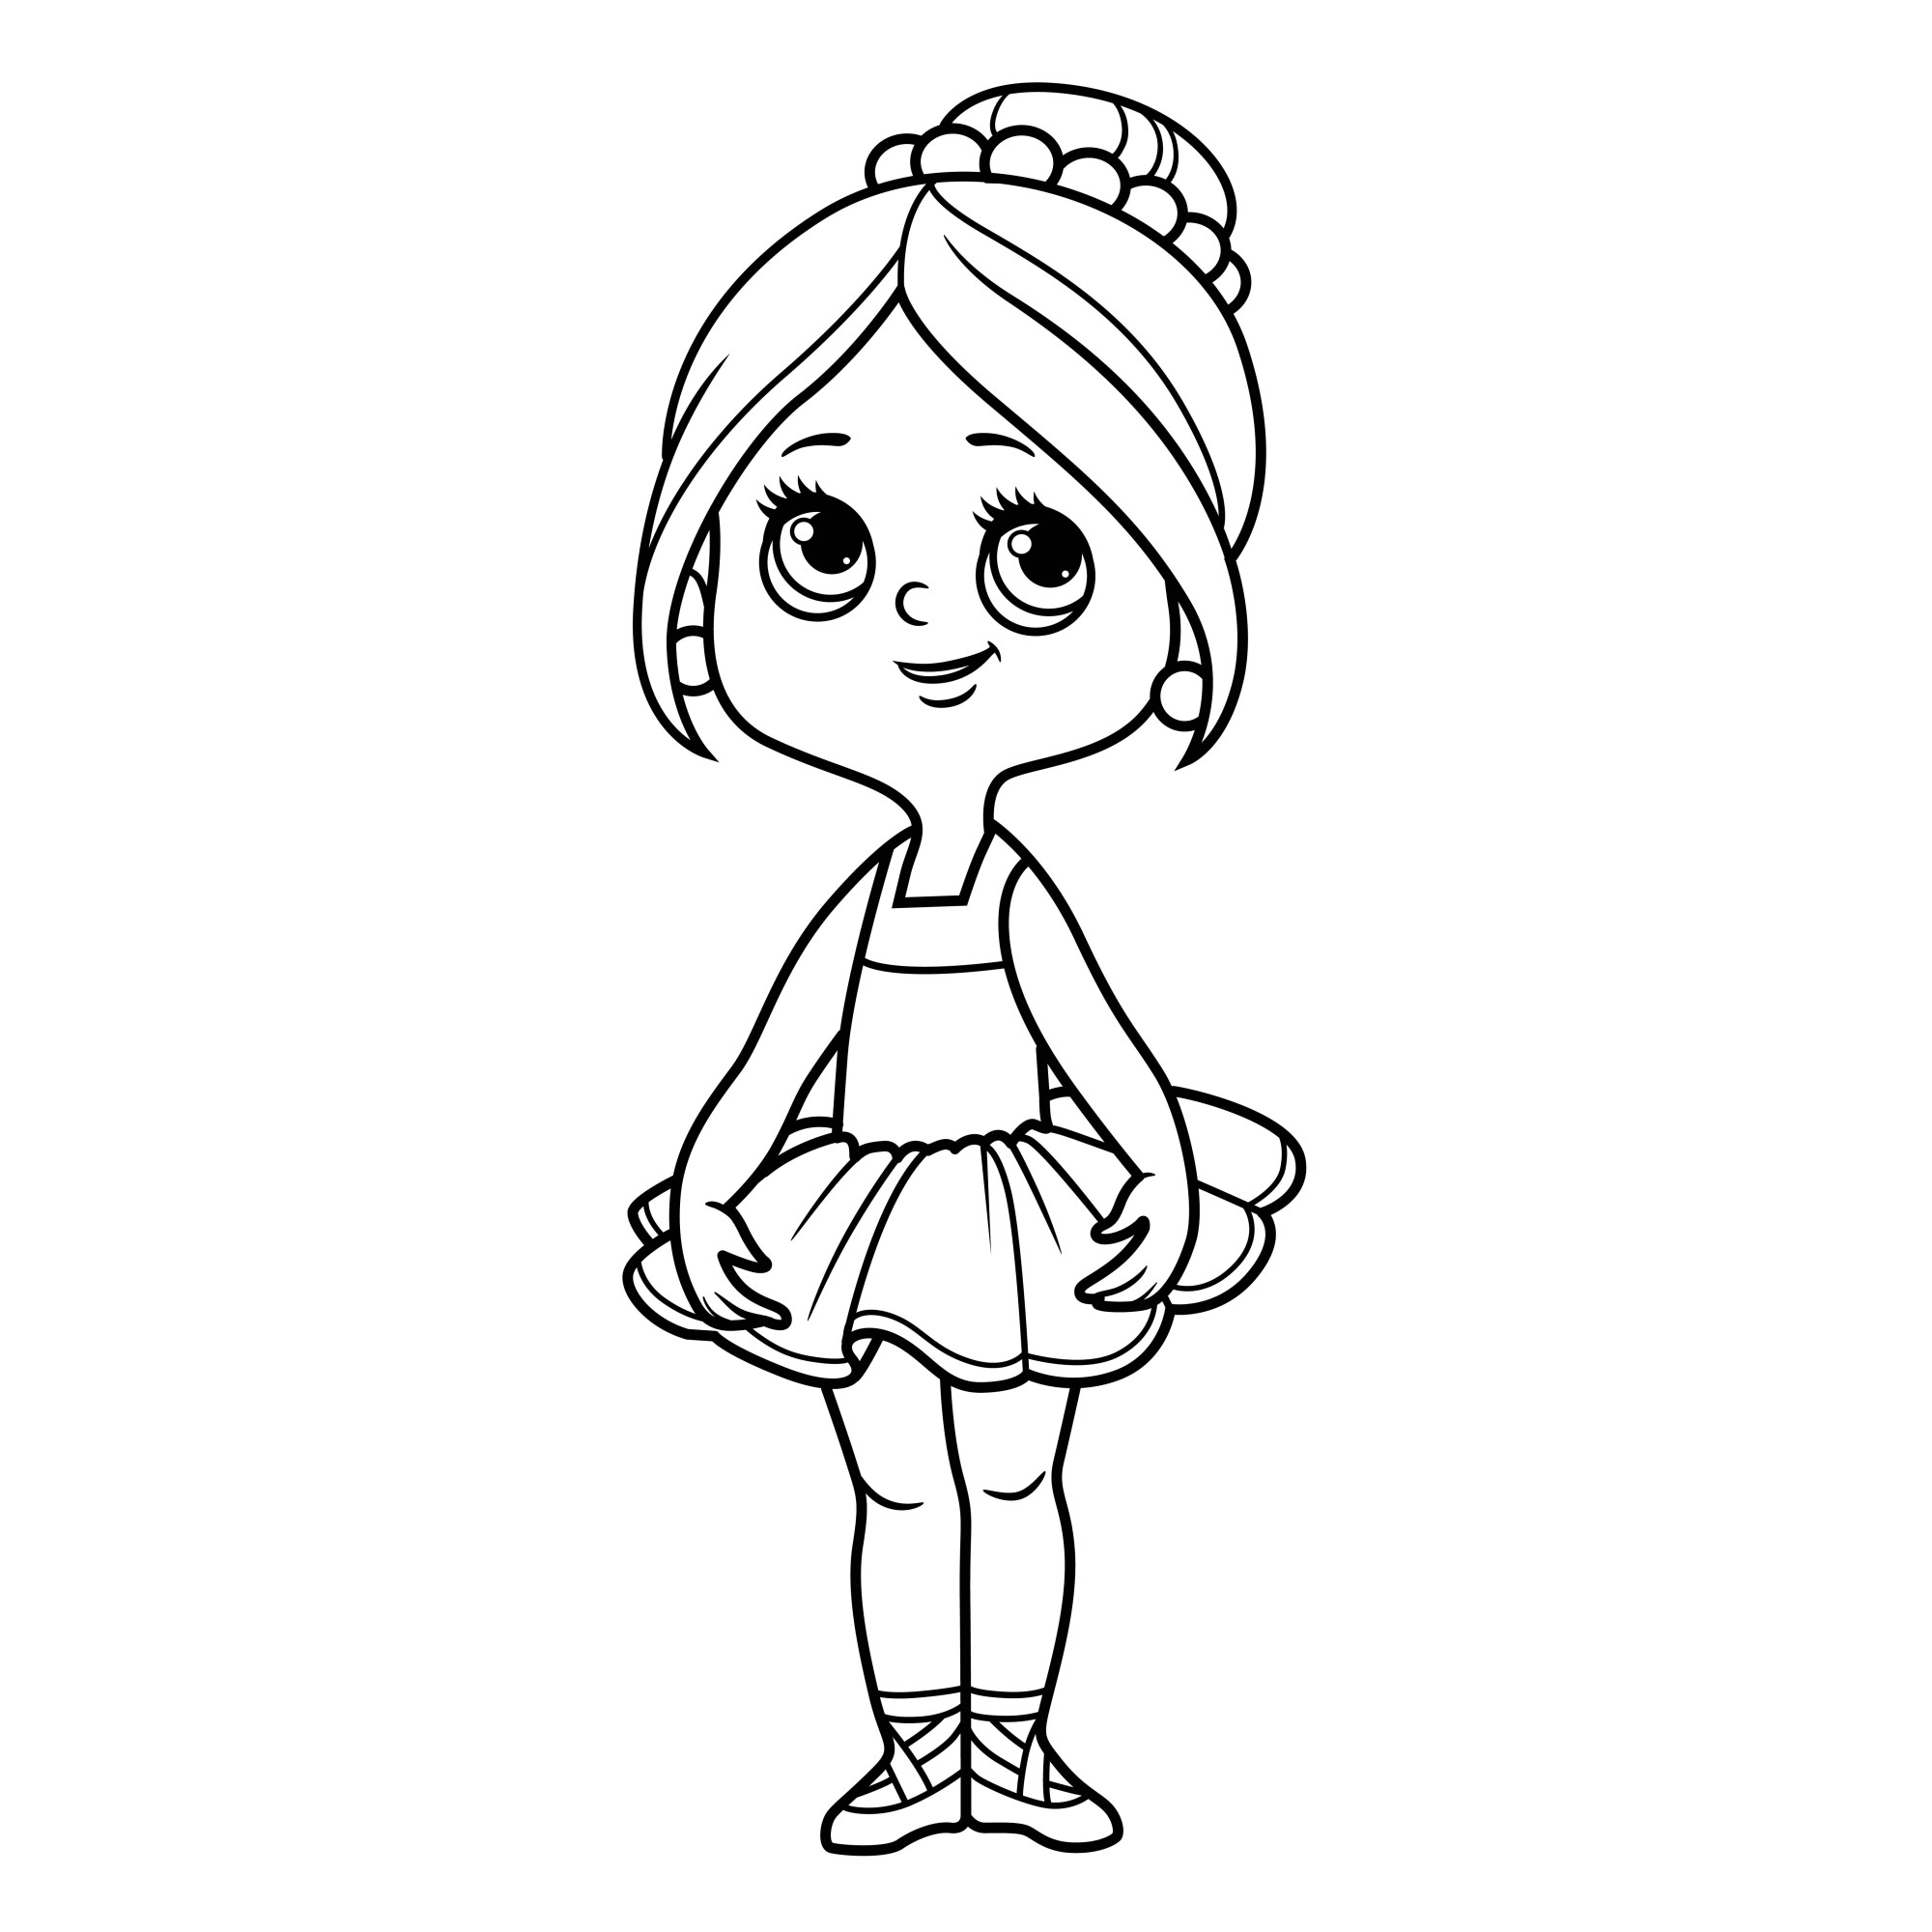 Раскраска для детей: мультяшная кукла балерина в пышной юбке